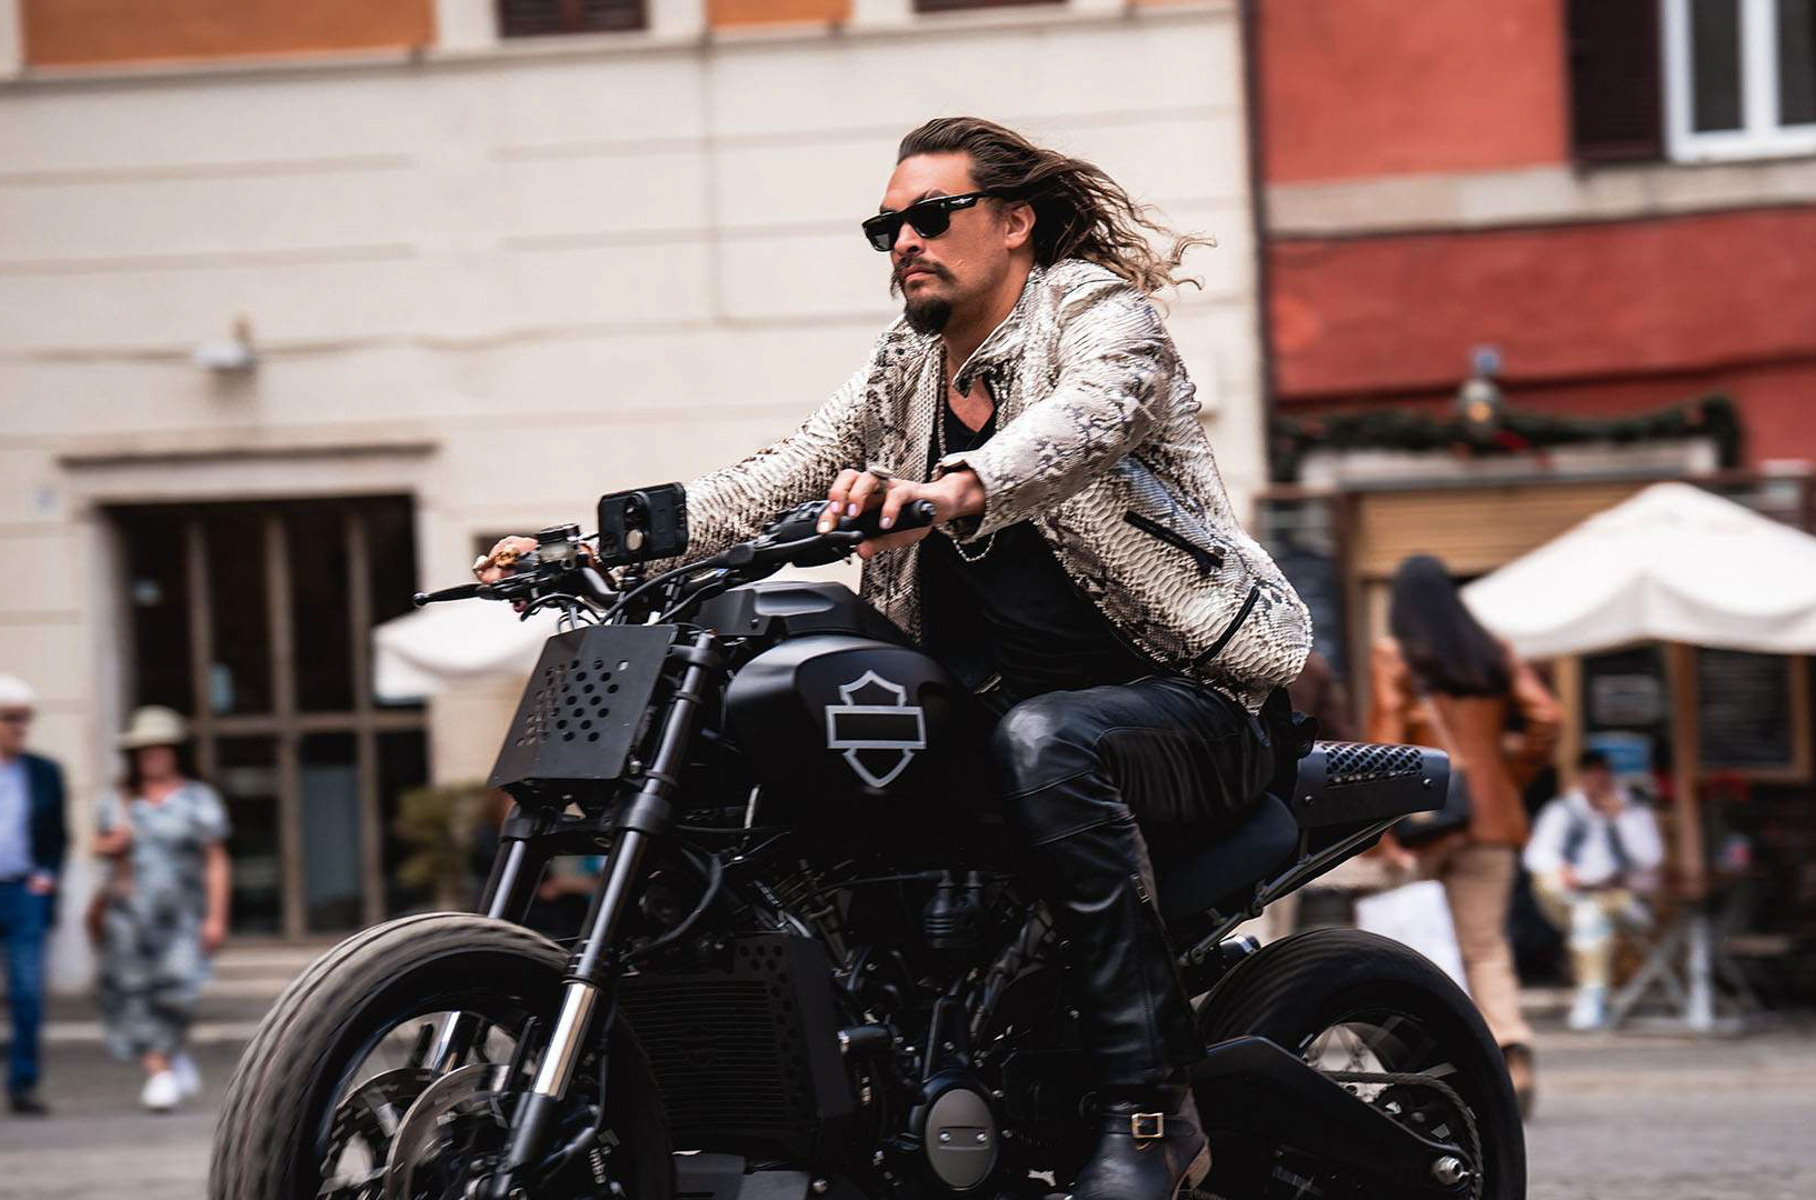 Ещё в начале девяностых Никита Джигурда запомнился виртуозным владением мотоциклом с коляской в драме «Любить по-русски». Актёр и сейчас отдаёт предпочтение двум колёсам — кроме чоппера «на каждый день», в личной коллекции актёра несколько кастомных Harley Davidson